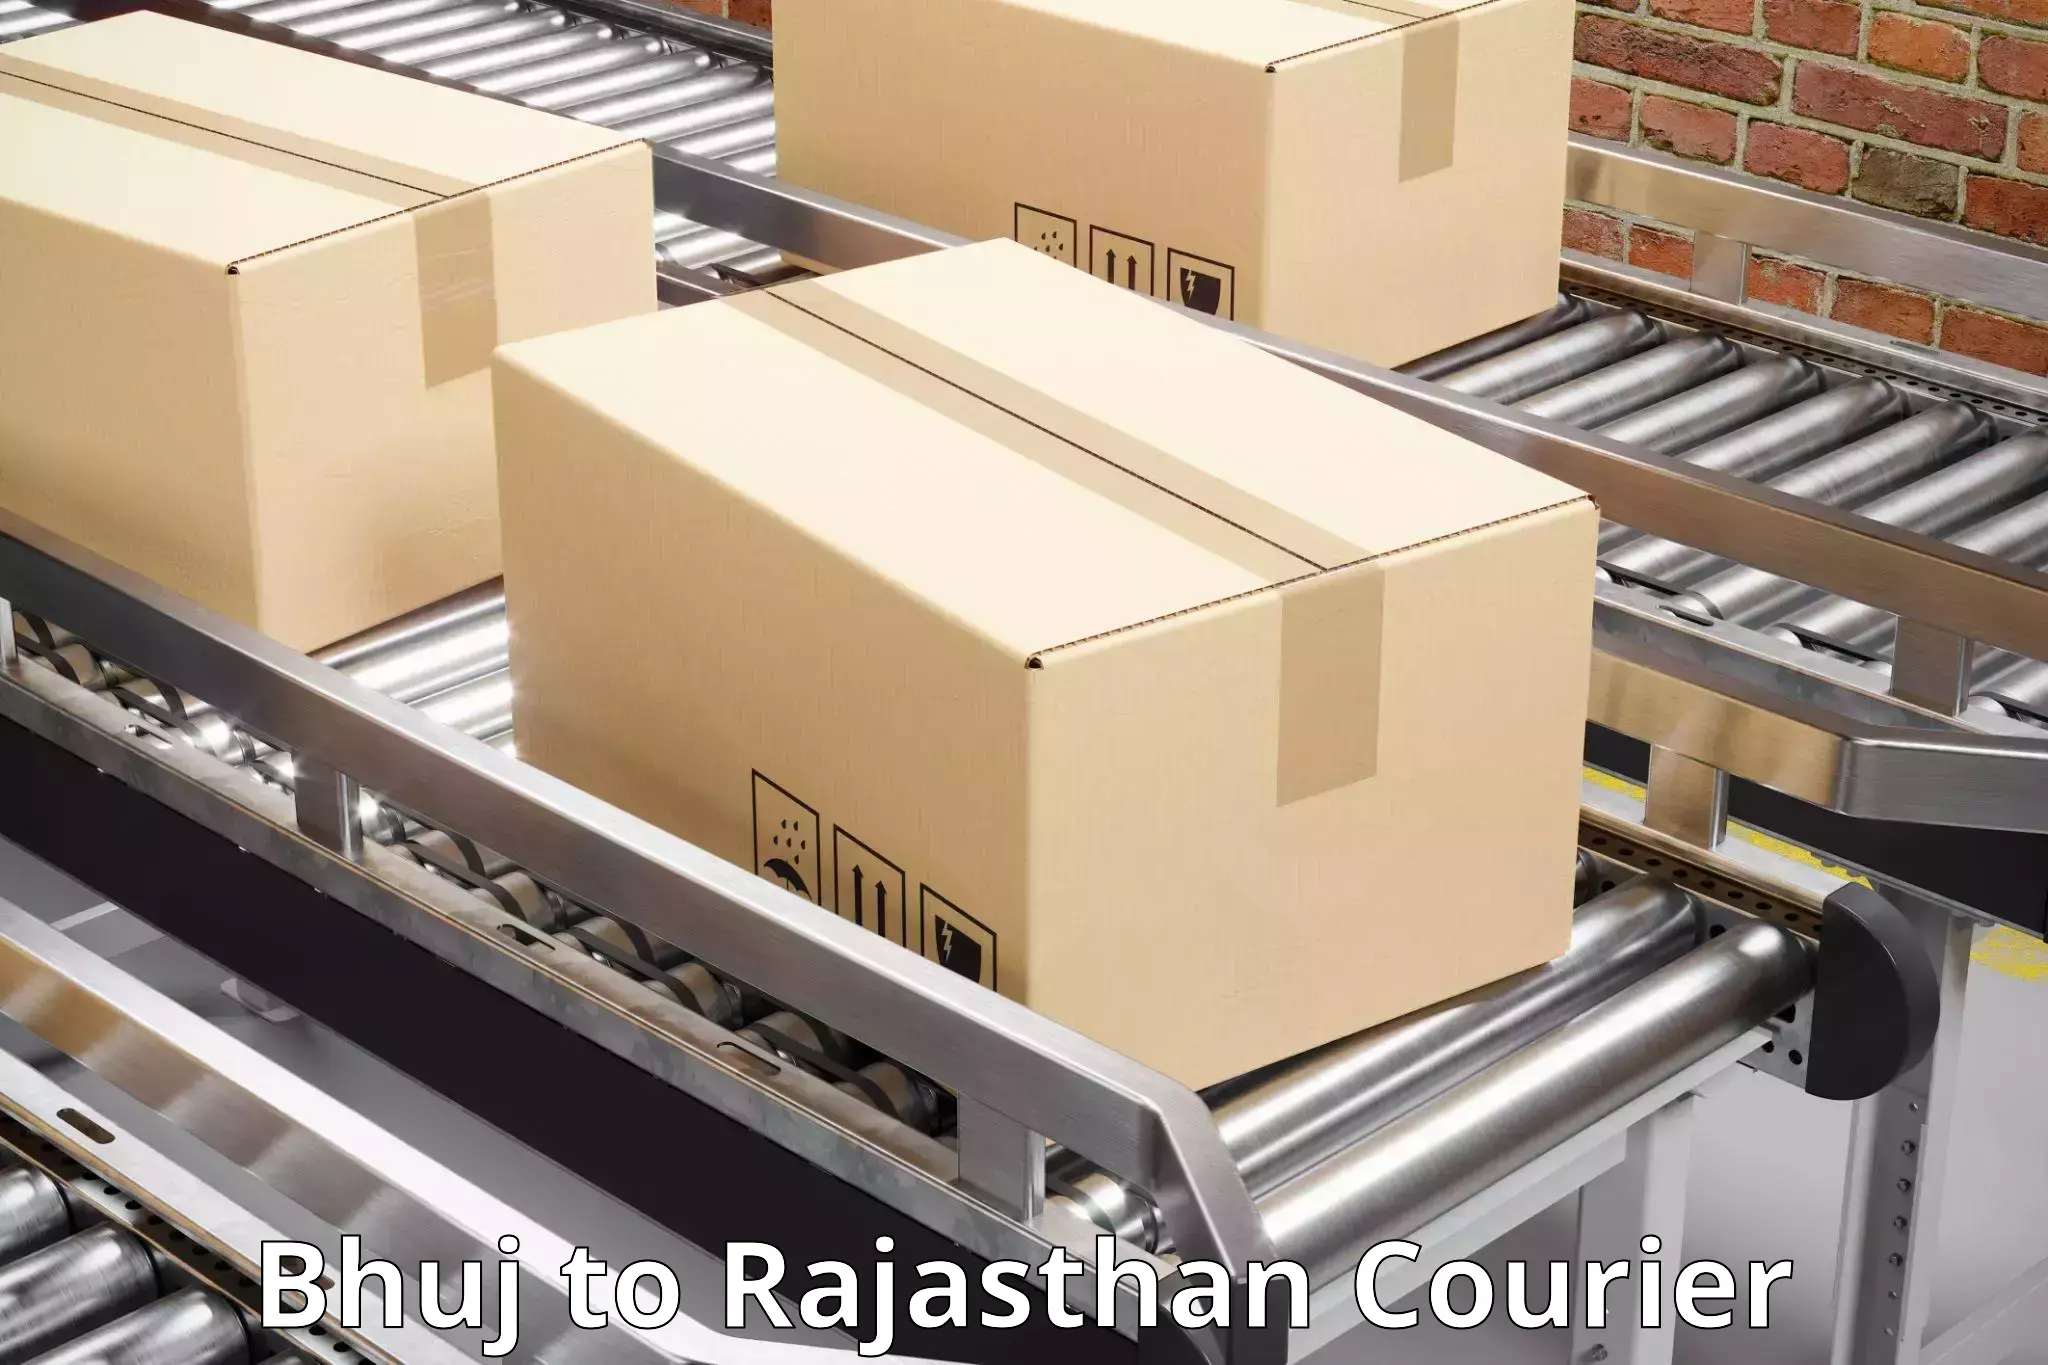 Retail shipping solutions Bhuj to Nainwa